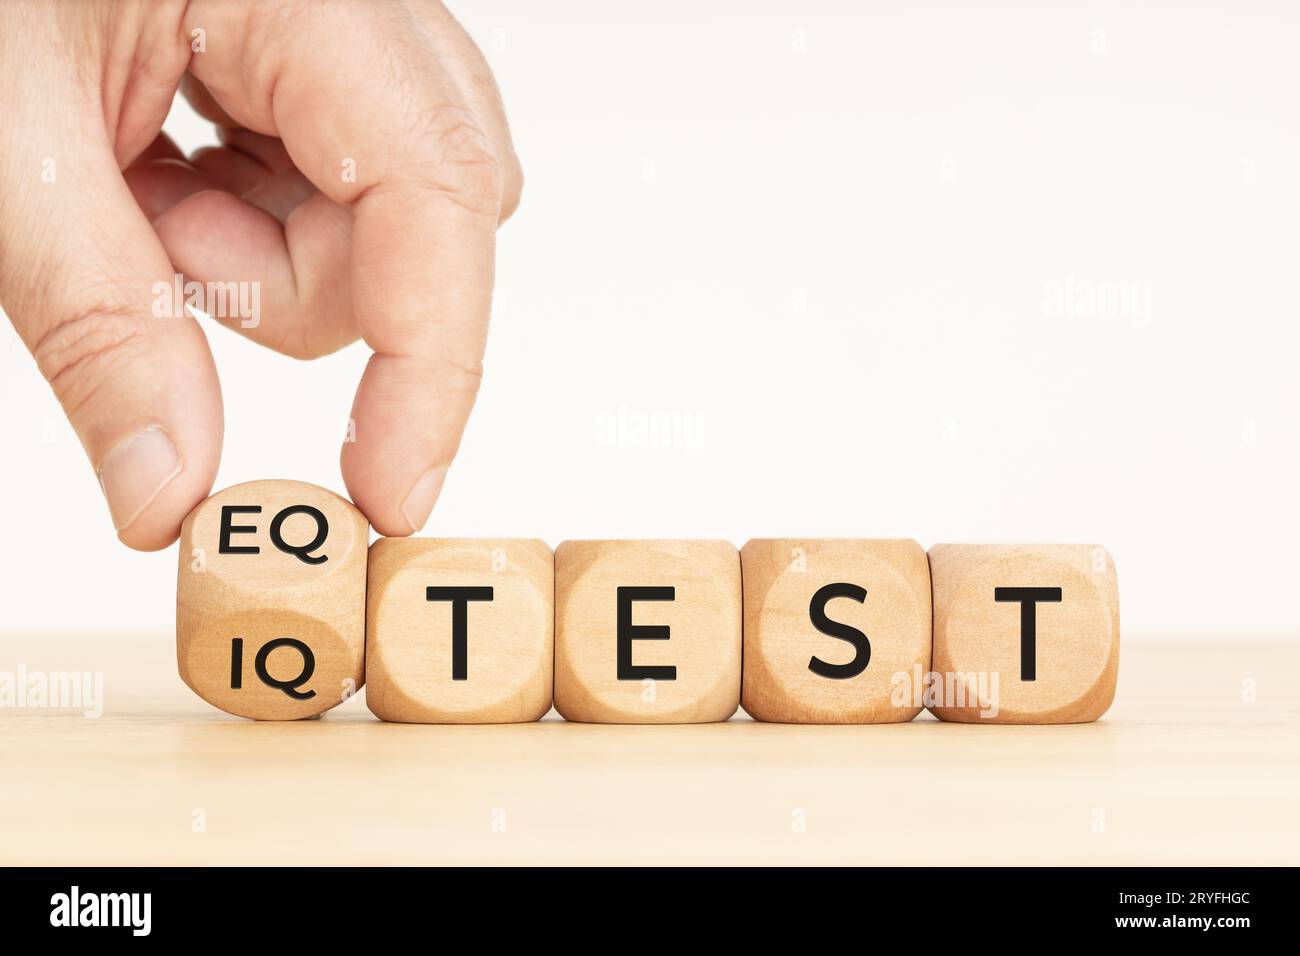 Handdrehung eines Holzblocks mit EQ-Test und iq-Testphase. Speicherplatz kopieren. Weißer Hintergrund Stockfoto